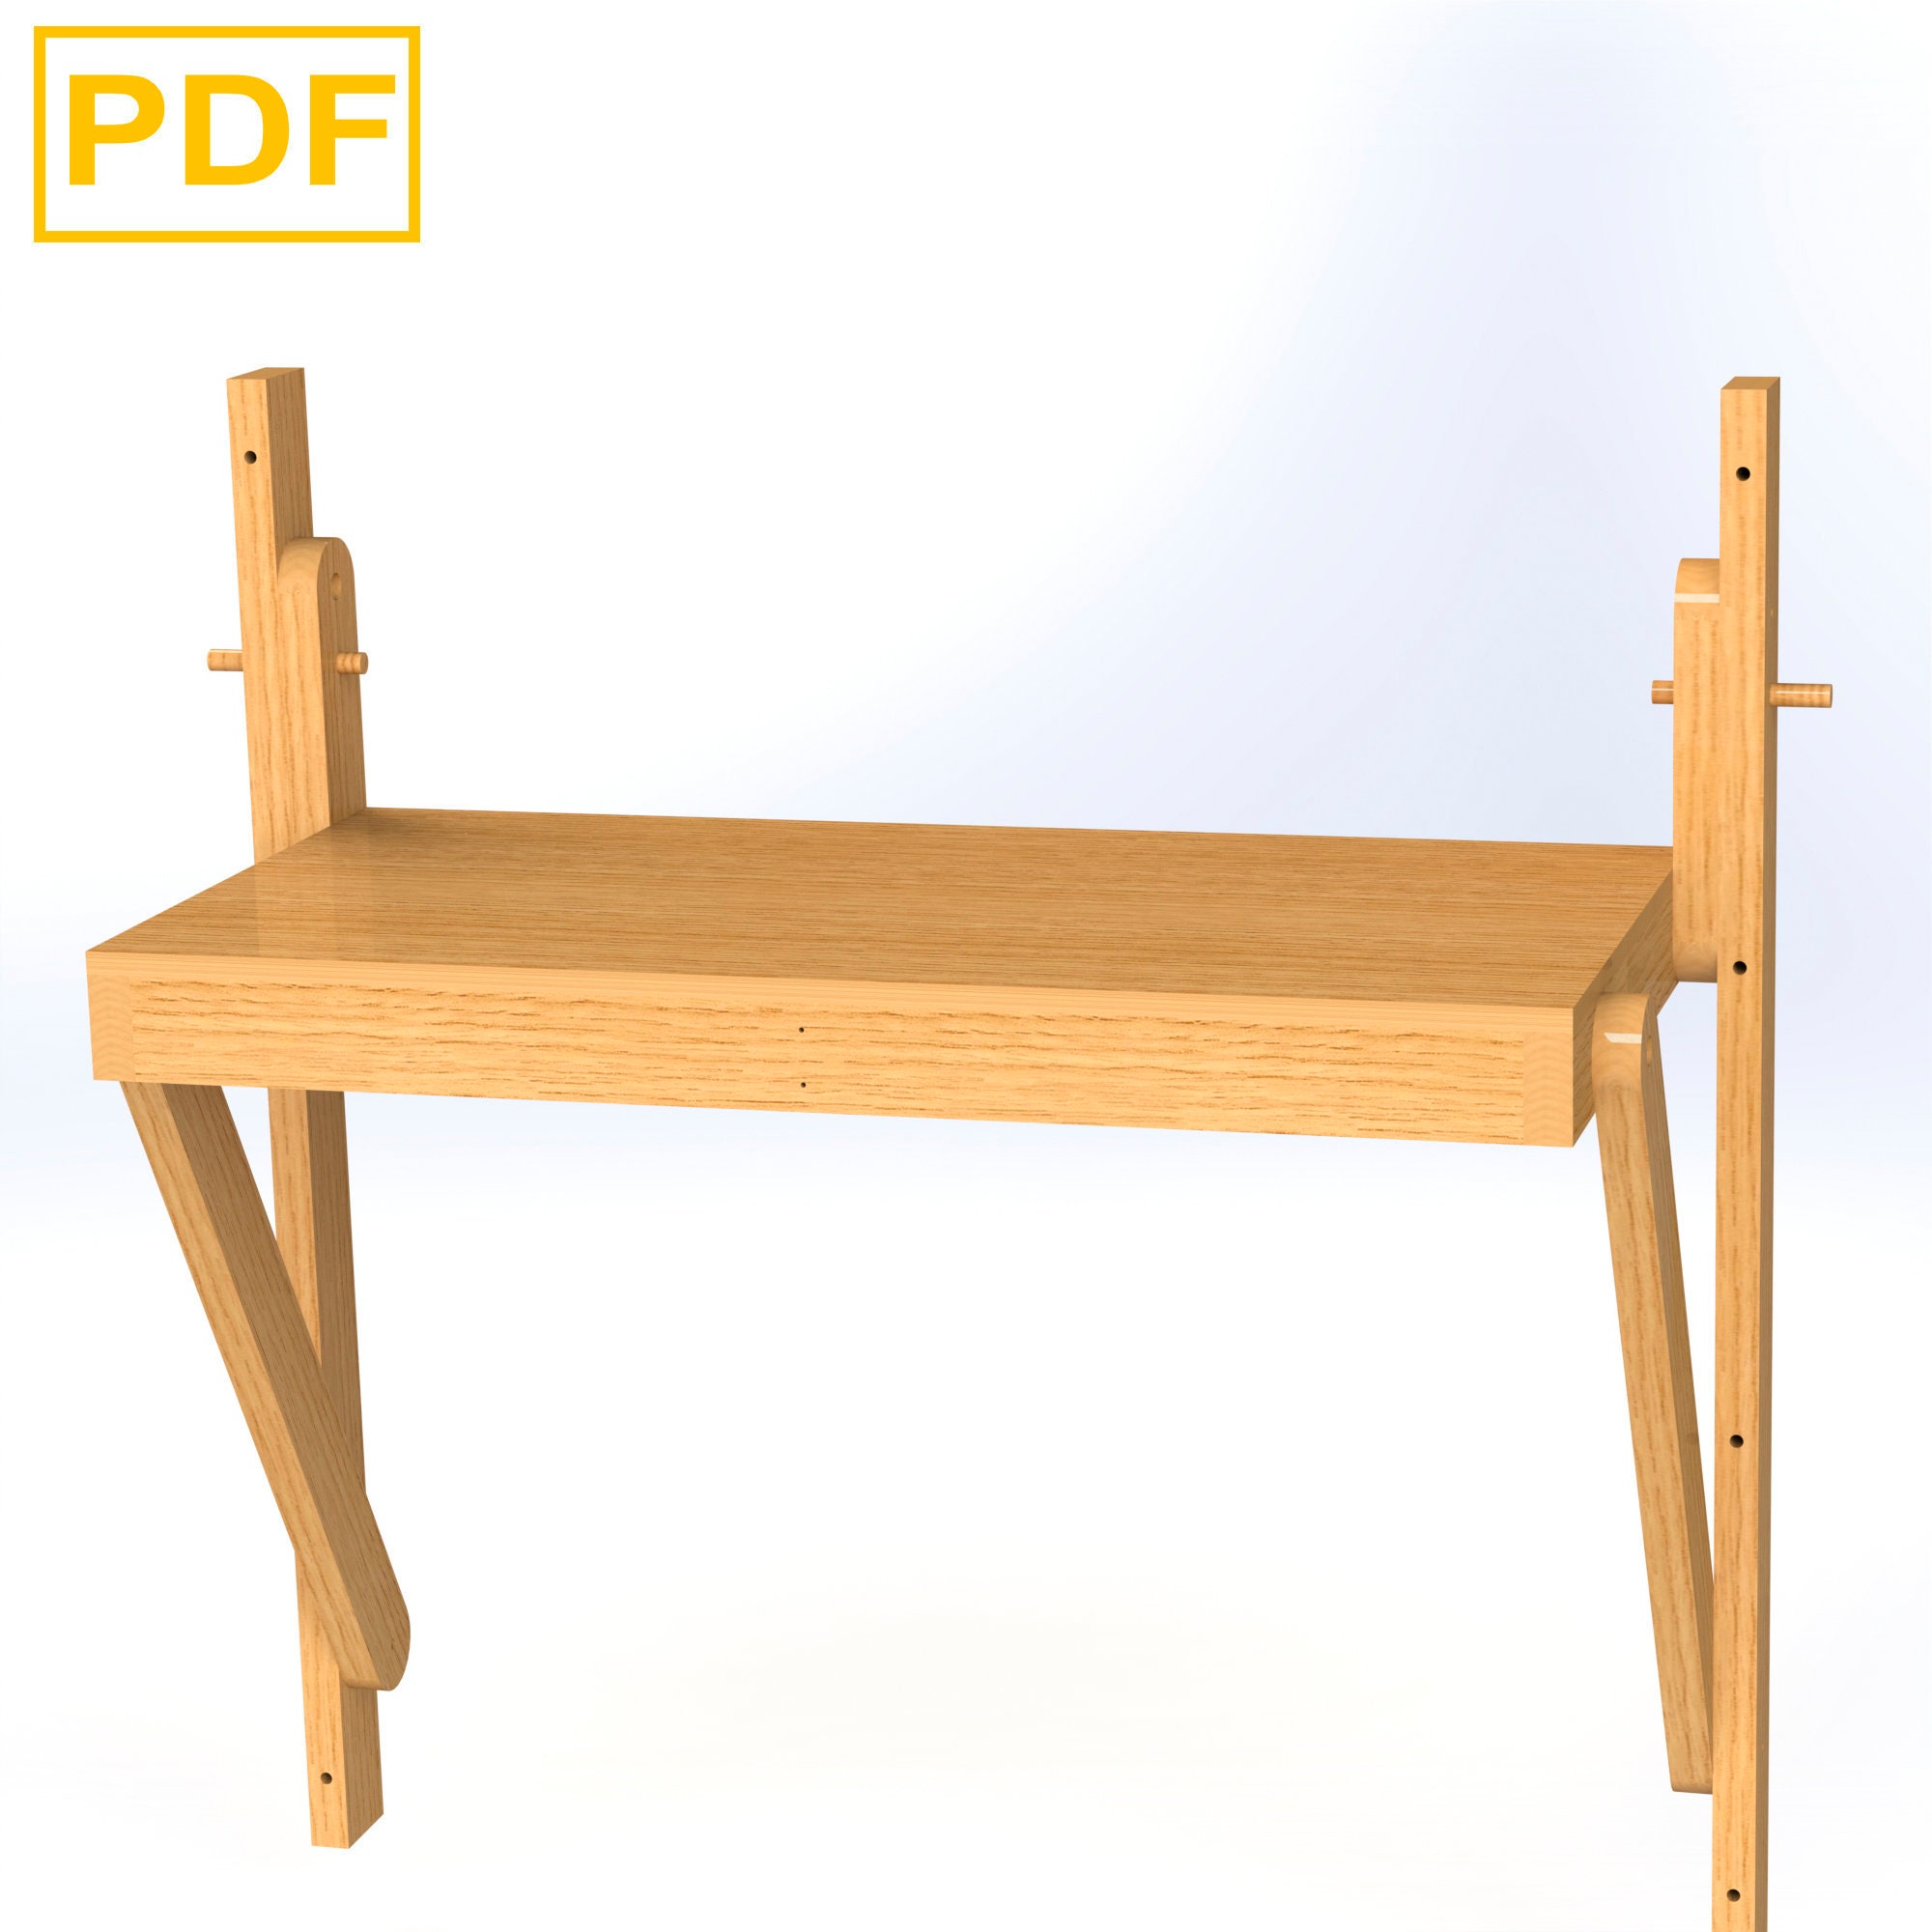 Planos de carpintería mesa plegable de madera 4 x 2, mesa plegable